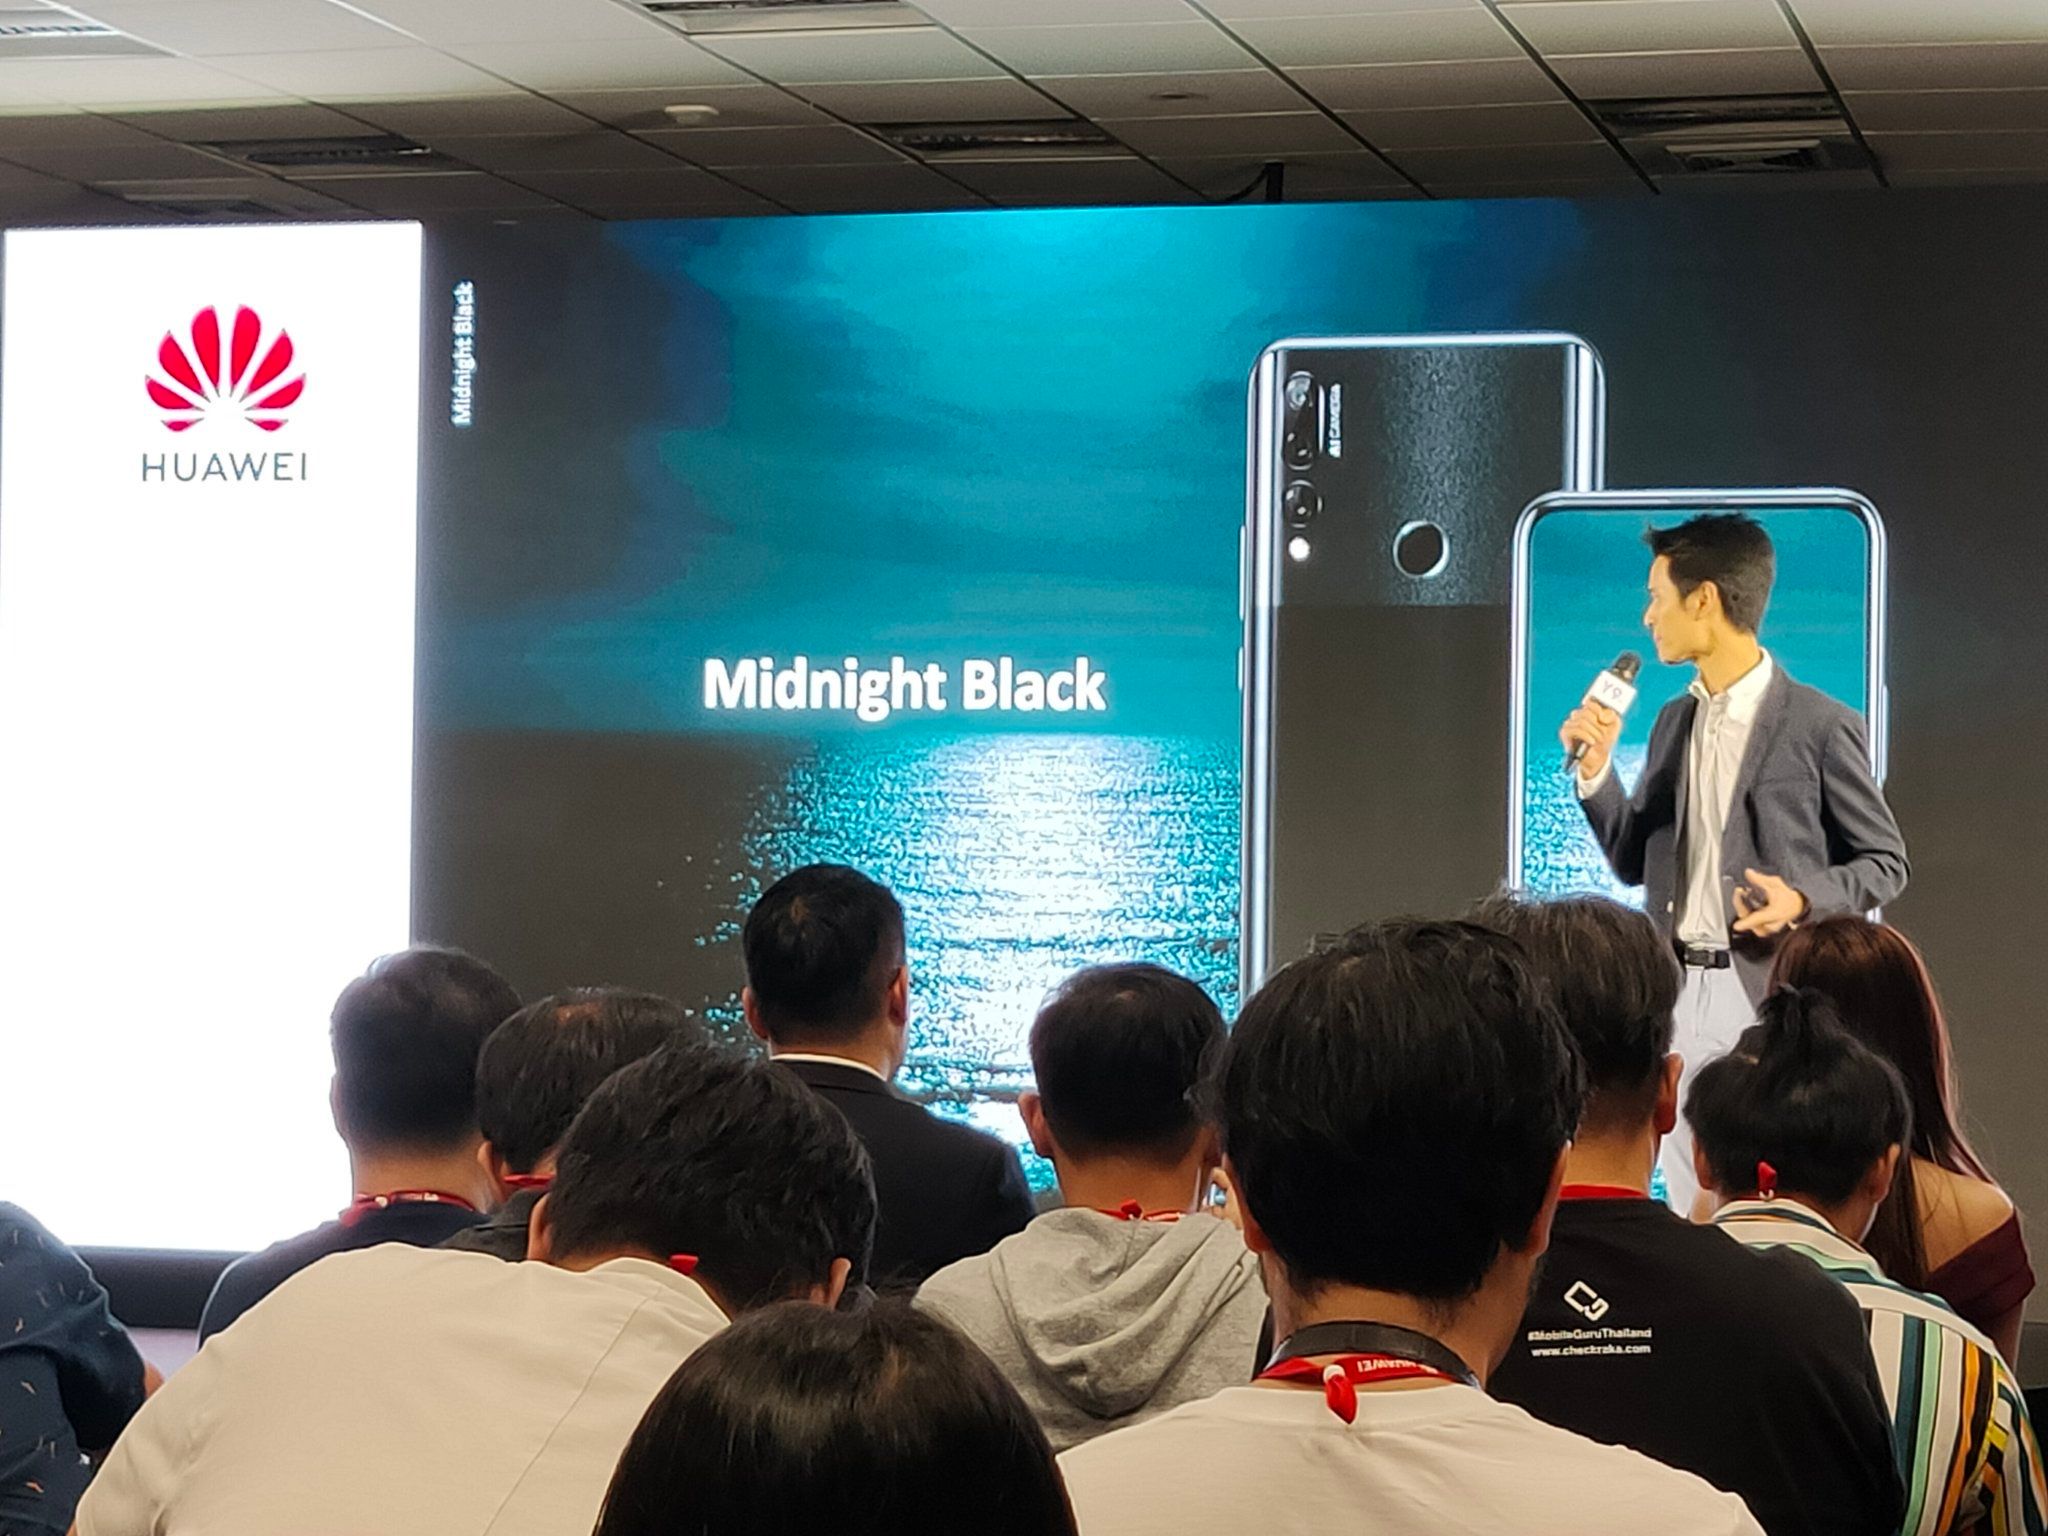 เปิดตัว Huawei Y9 Prime 2019 มือถือกล้องเซลฟี่ป๊อปอัพ + กล้องหลัง 3 ตัว พร้อมแบต 4000 mAh เคาะราคา 7,990 บาท